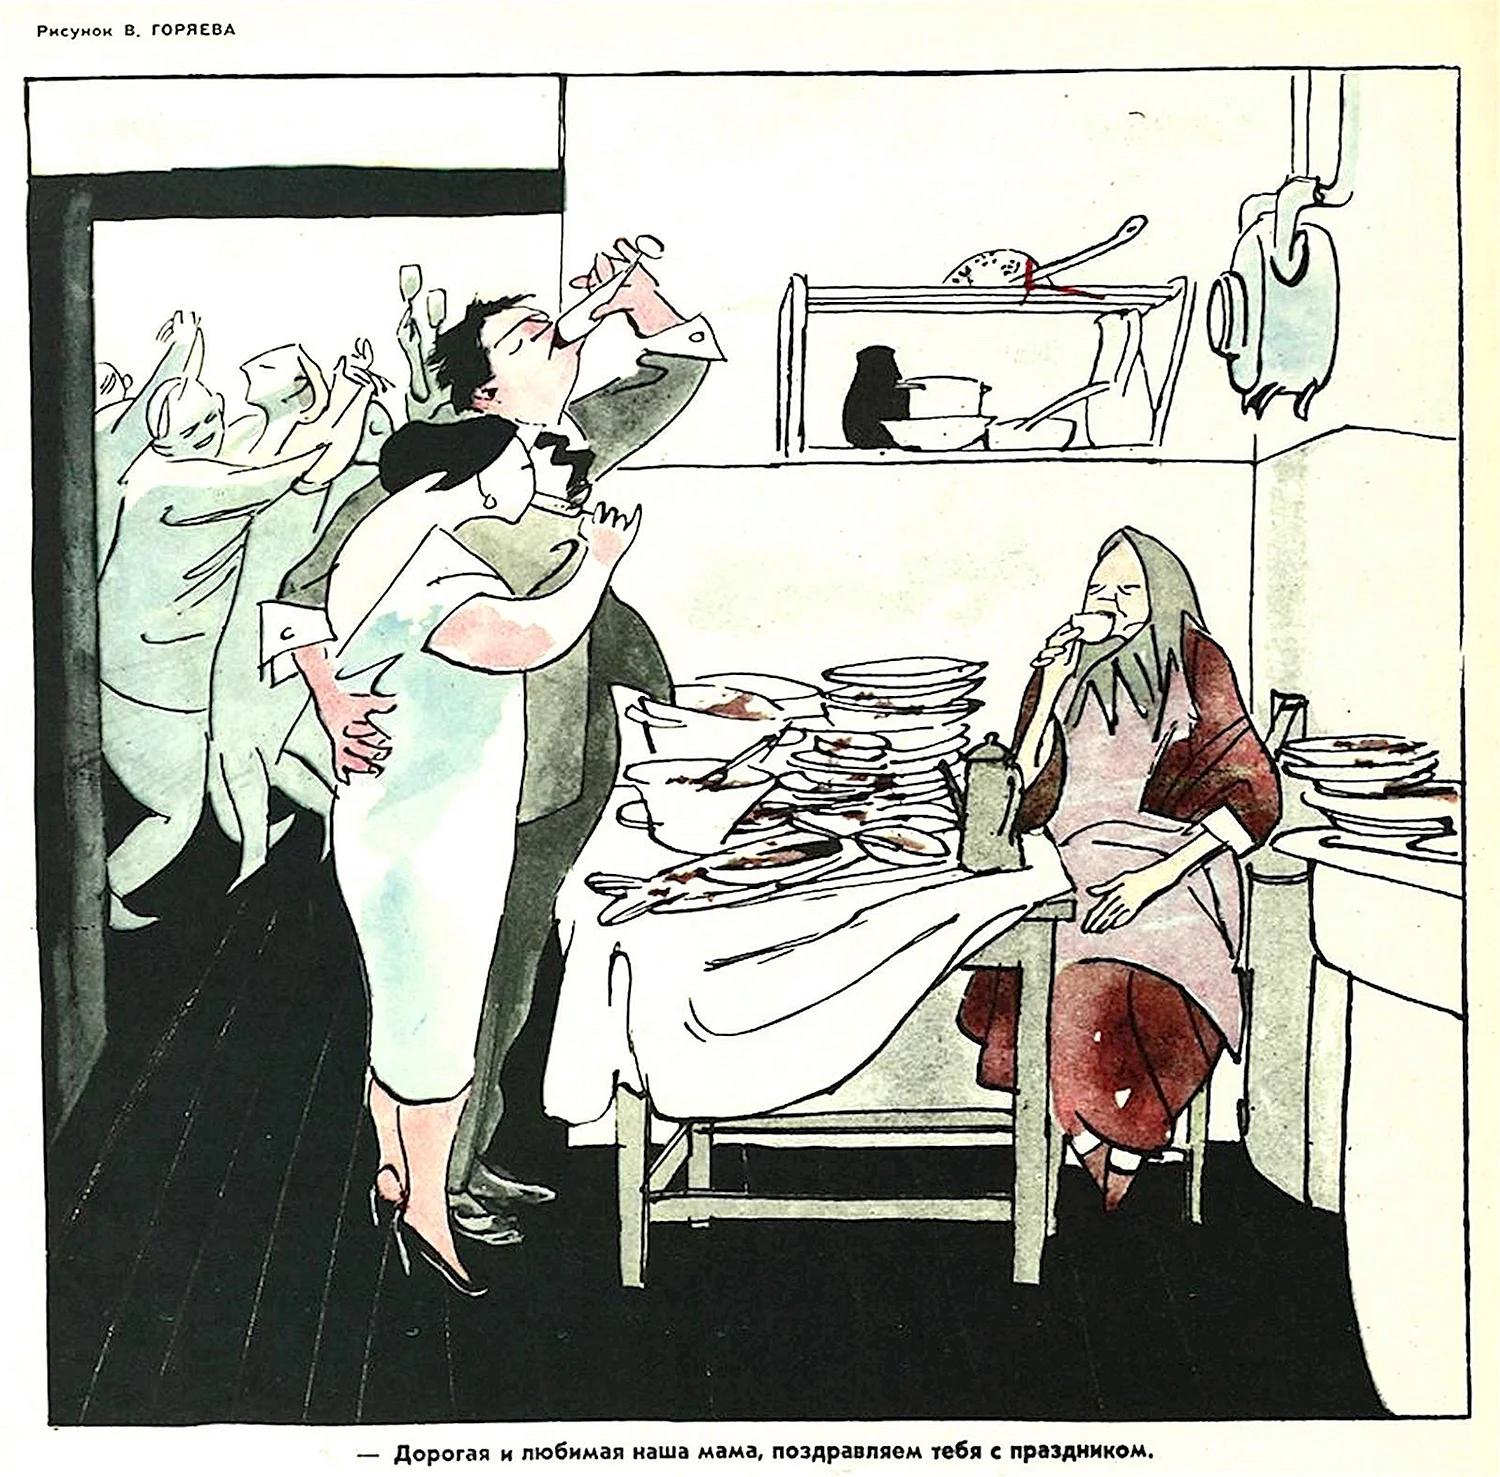 Иллюстрации из журнала крокодил СССР